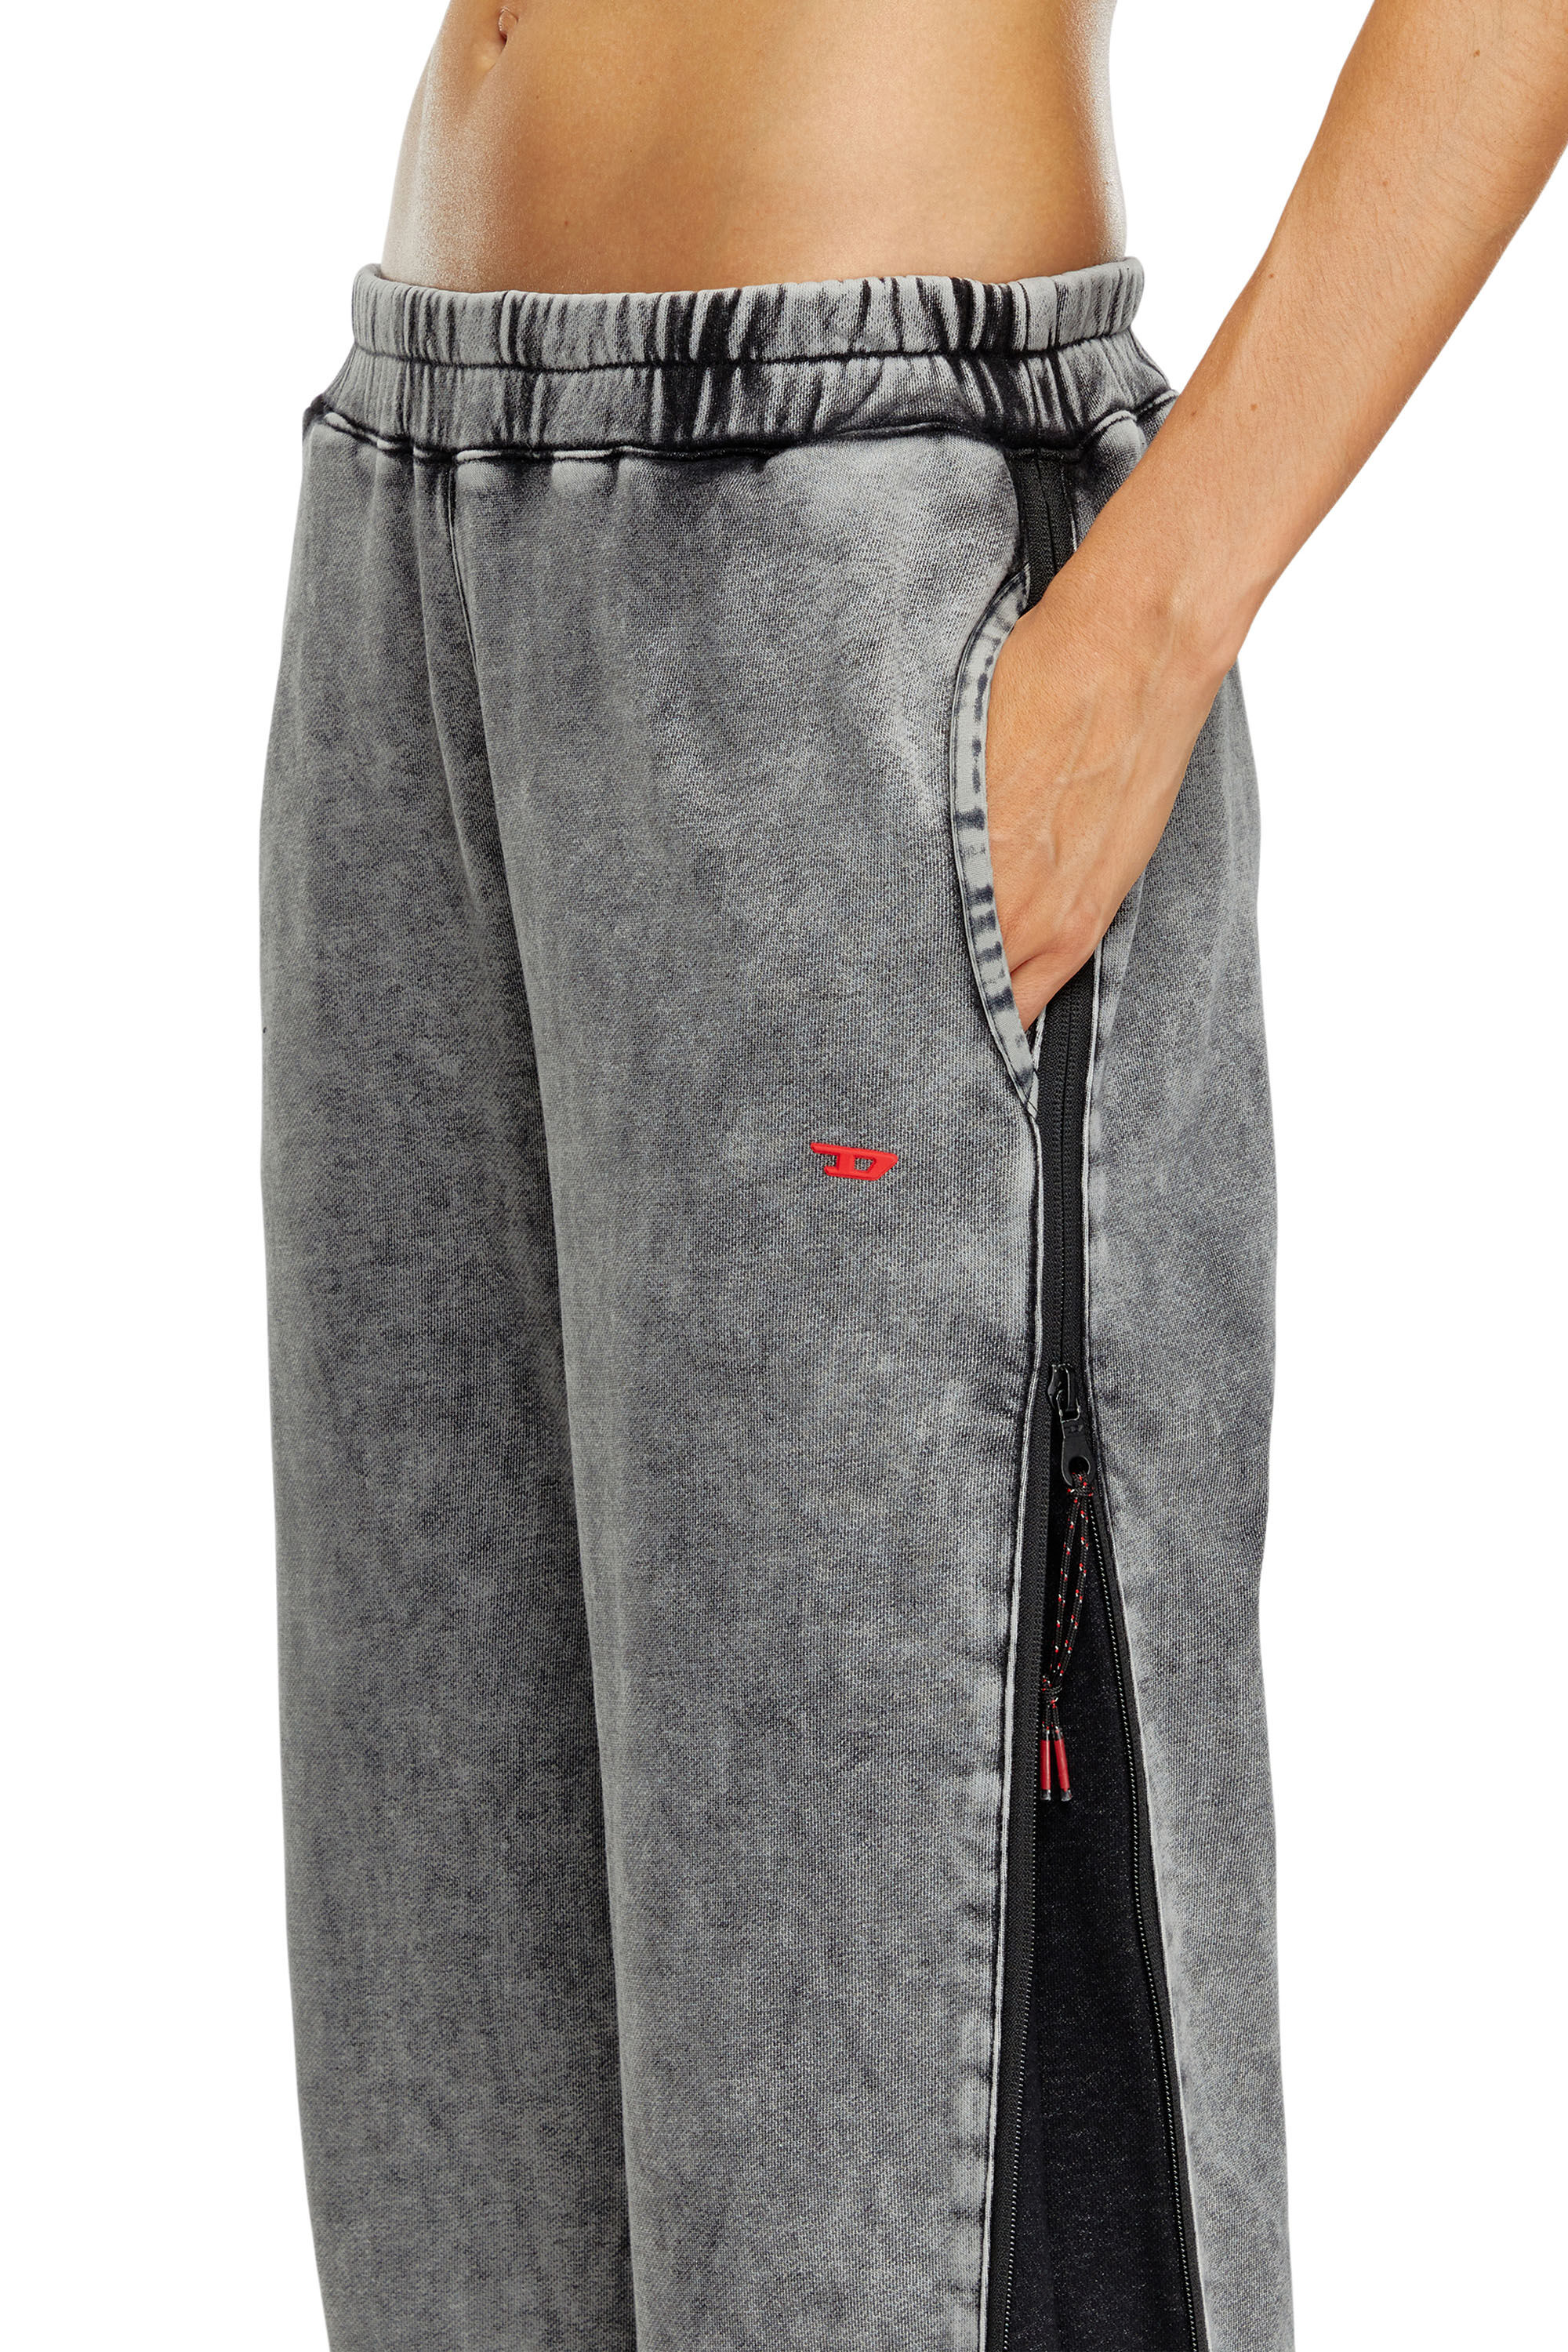 Diesel - AWSB-DELANEY-HT51, Mujer Pantalones deportivos desteñidos con laterales con cremallera in Gris - Image 5